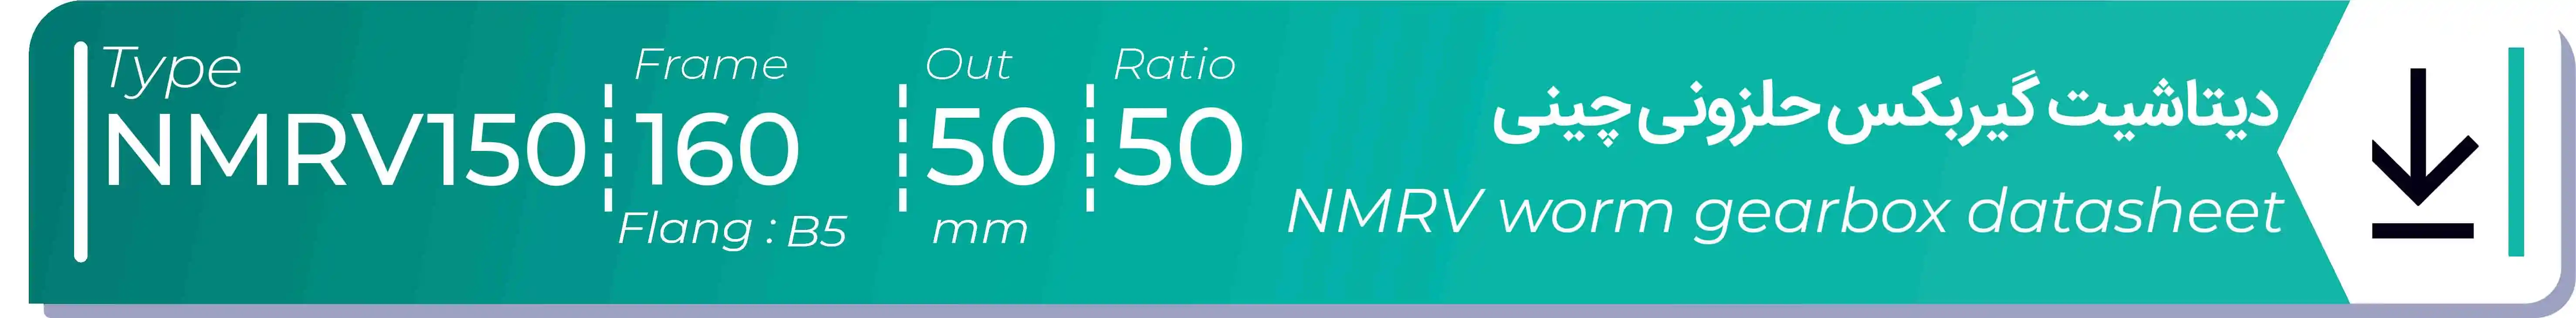  دیتاشیت و مشخصات فنی گیربکس حلزونی چینی   NMRV150  -  با خروجی 50- میلی متر و نسبت50 و فریم 160